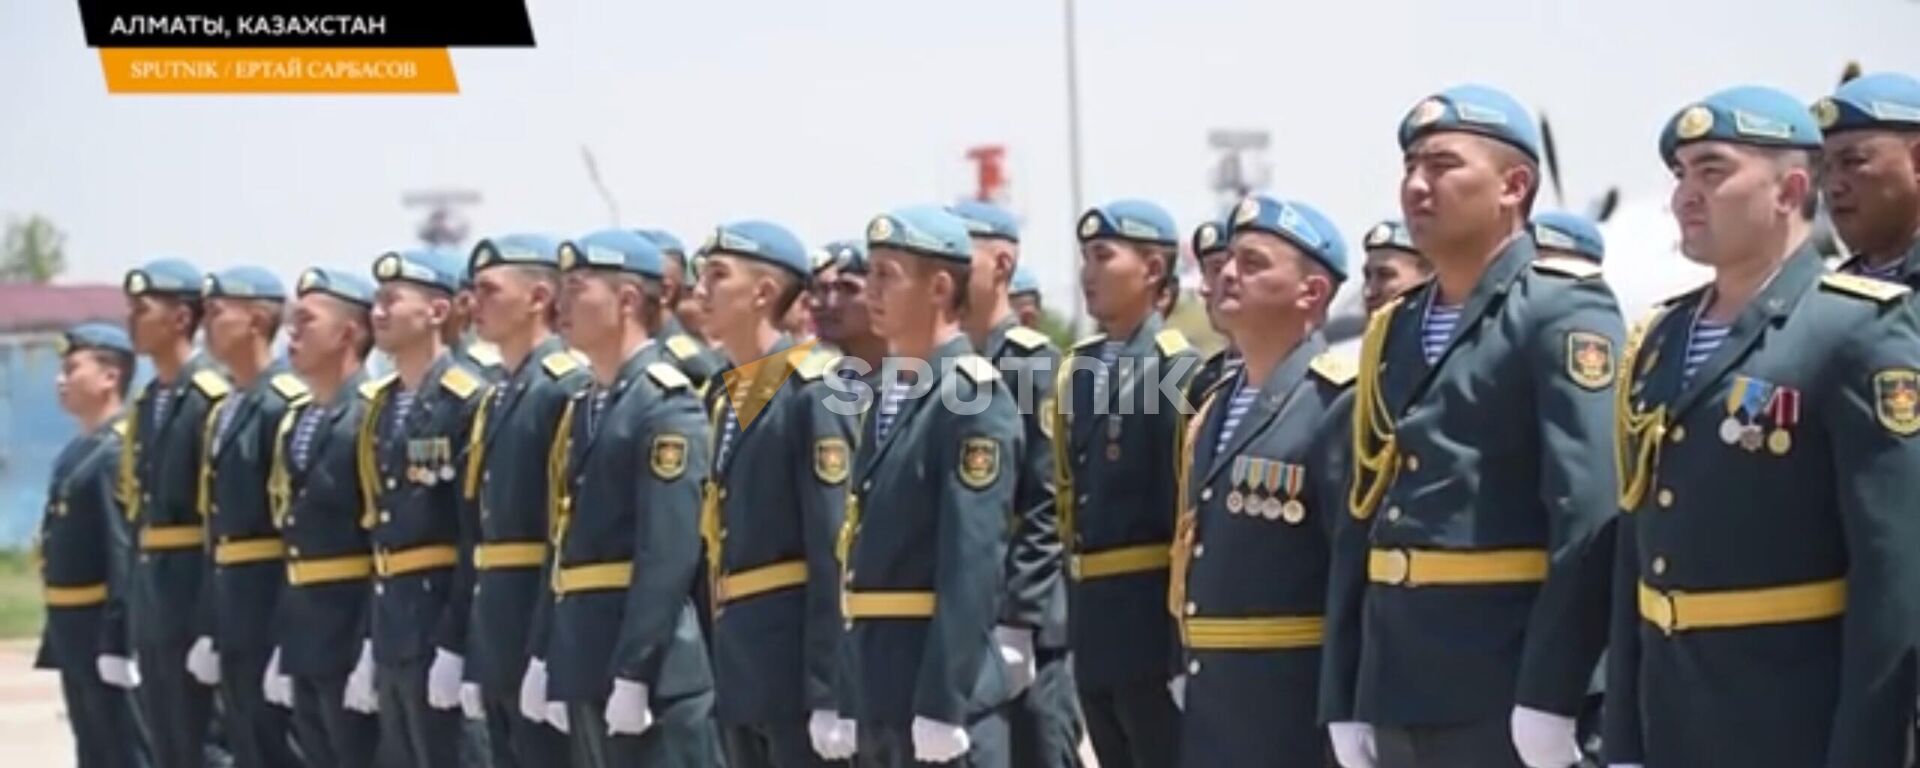 В Алматы доставили останки казахстанских солдат, погибших в ВОВ - видео - Sputnik Казахстан, 1920, 30.06.2022